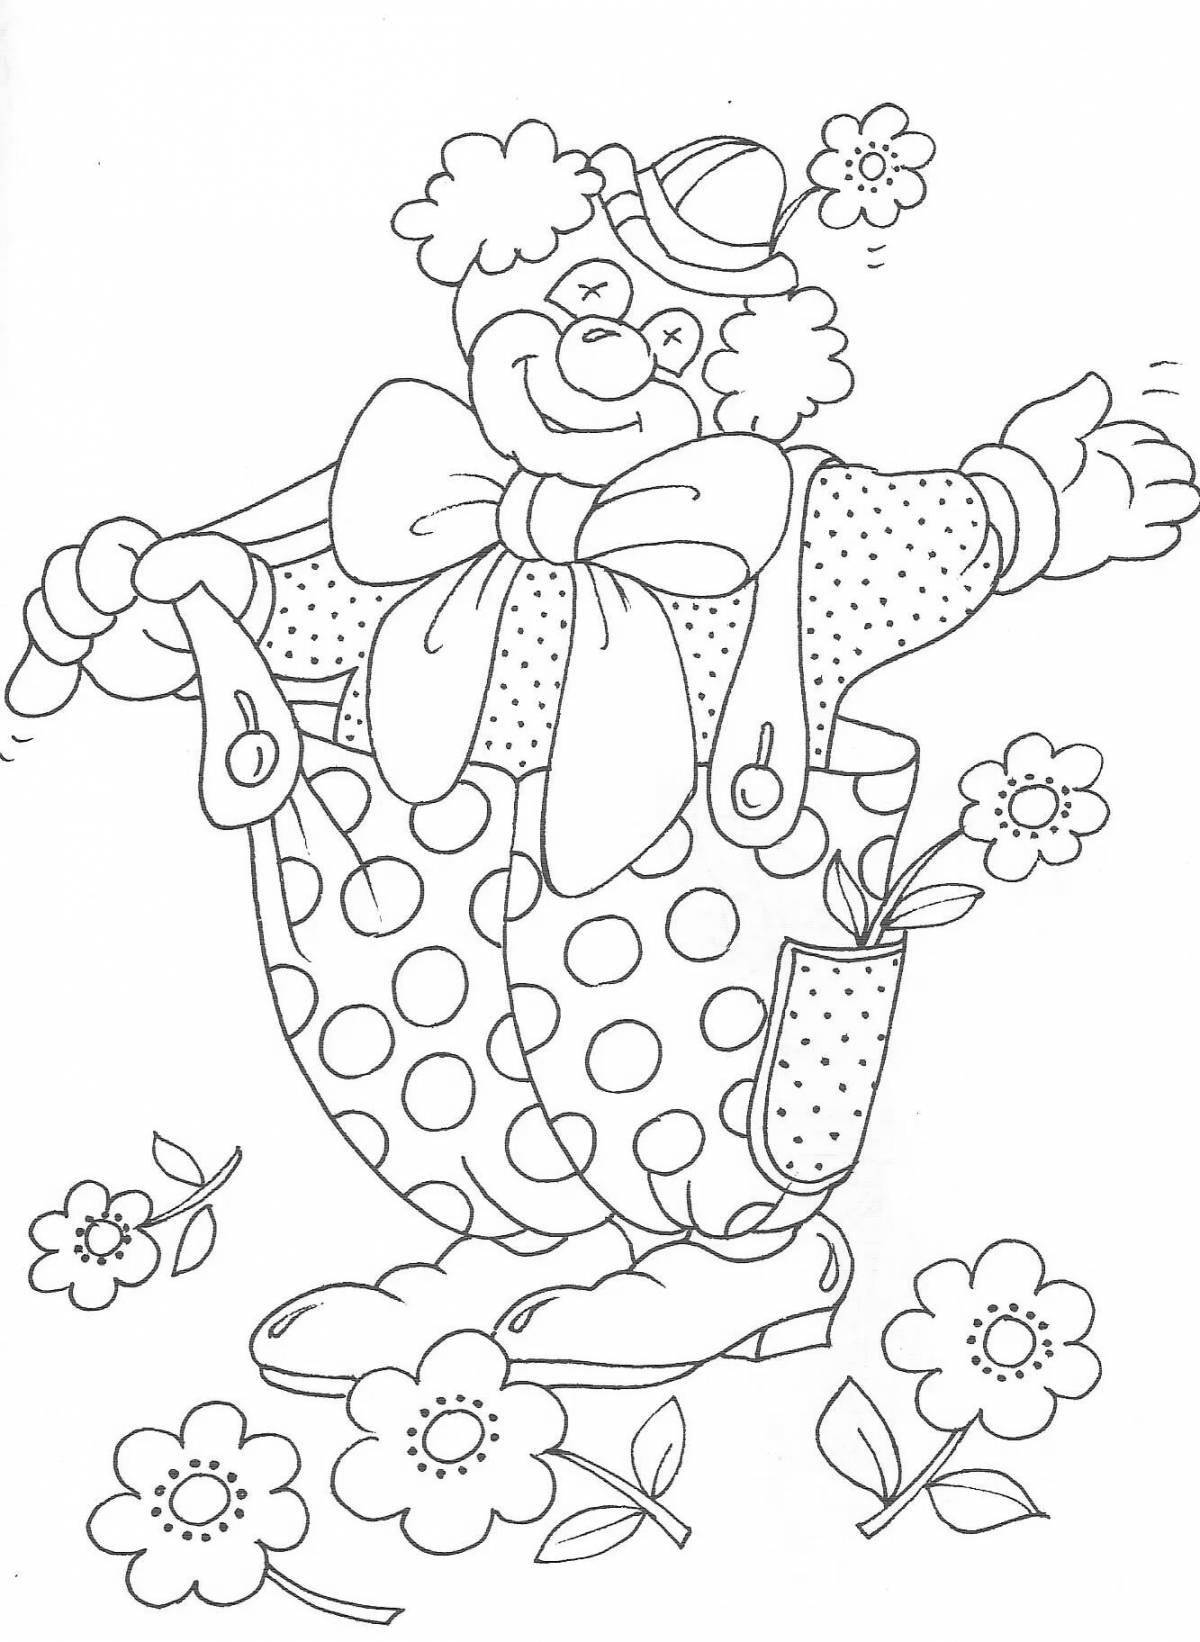 Веселый клоун-раскраска для детей 6-7 лет